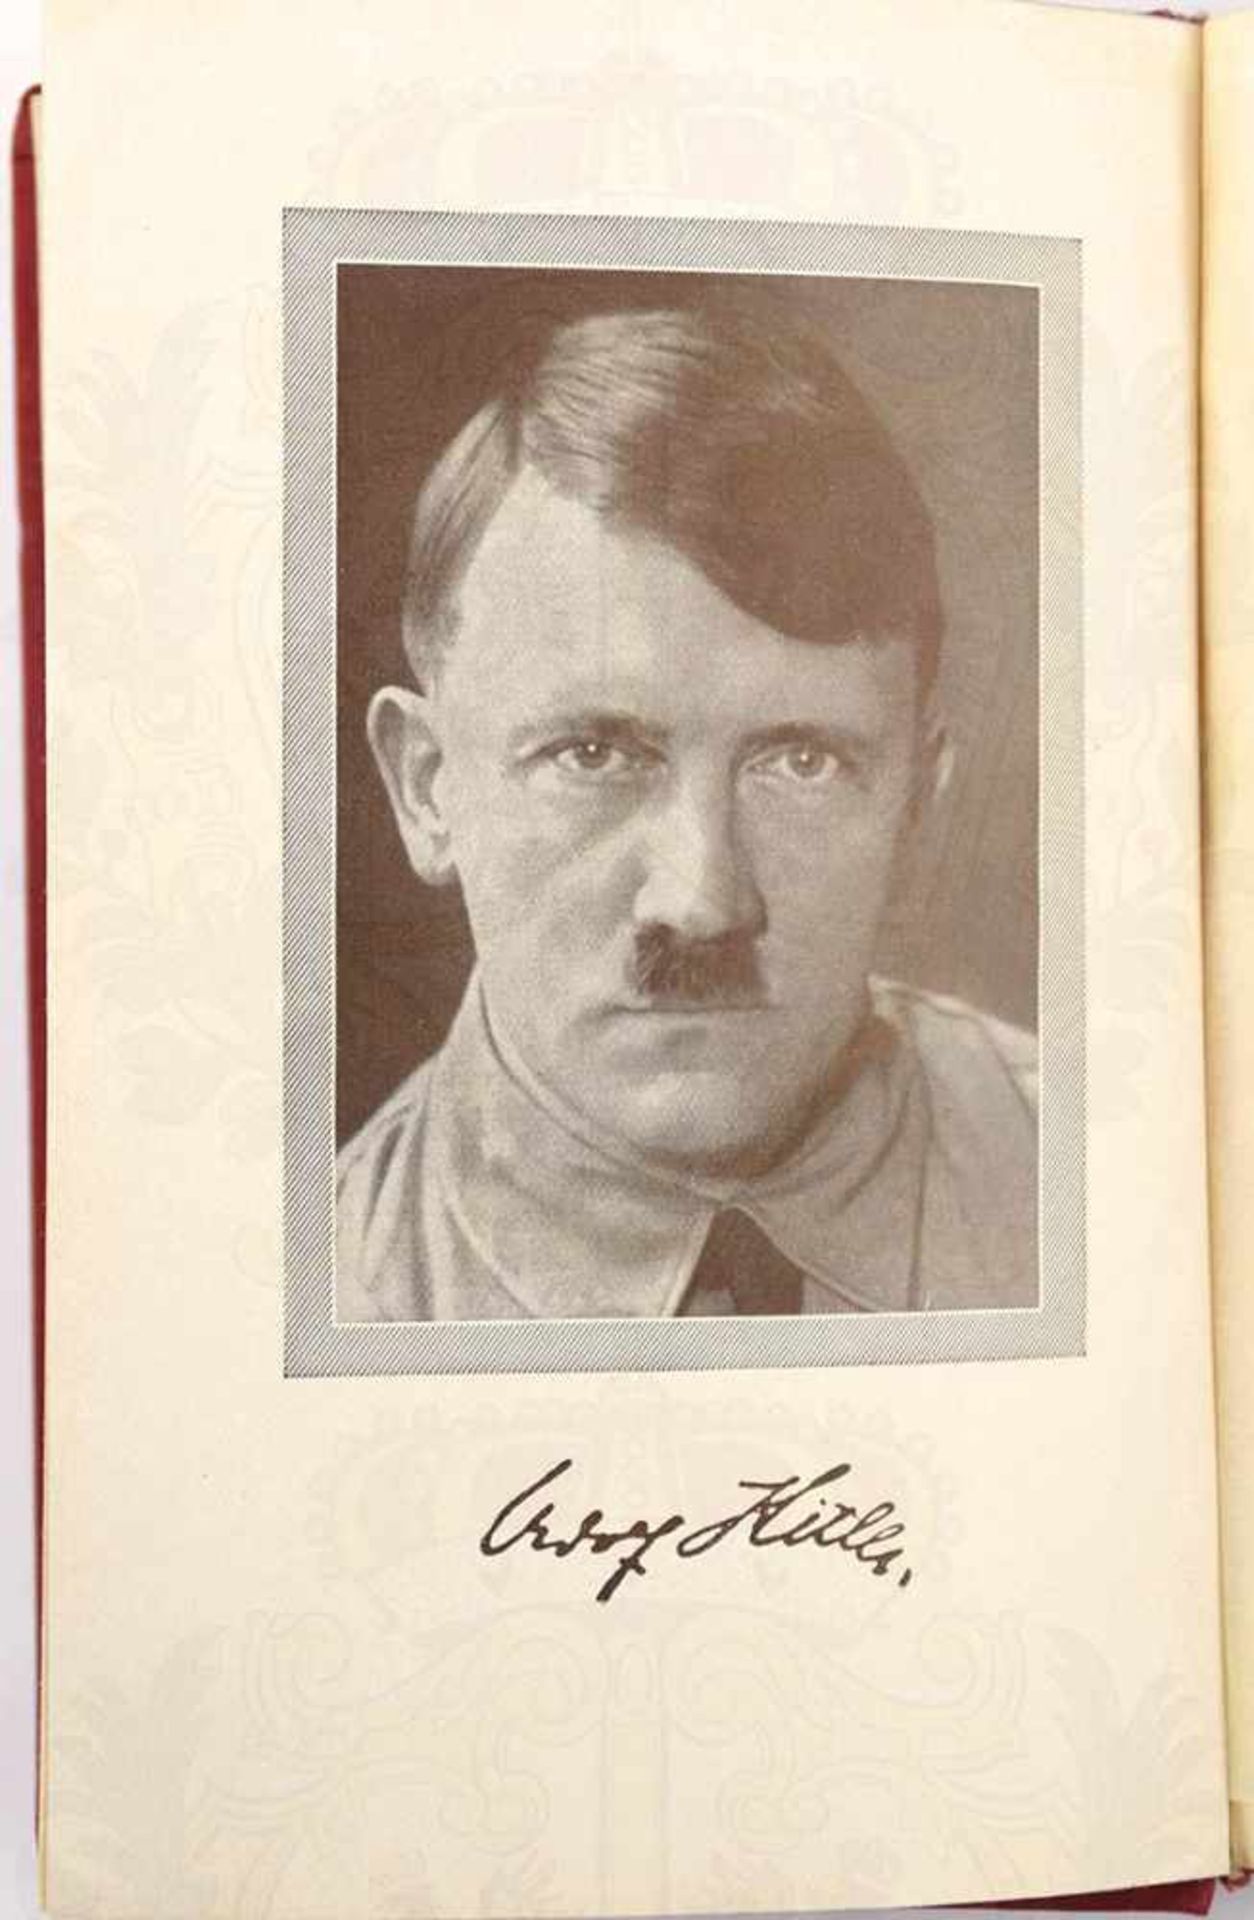 MEIN KAMPF, Dünndruckausgabe, Adolf Hitler, 5. Aufl., Eher-Verlag, München 1940, 781 S., 1 Portrait, - Bild 2 aus 3